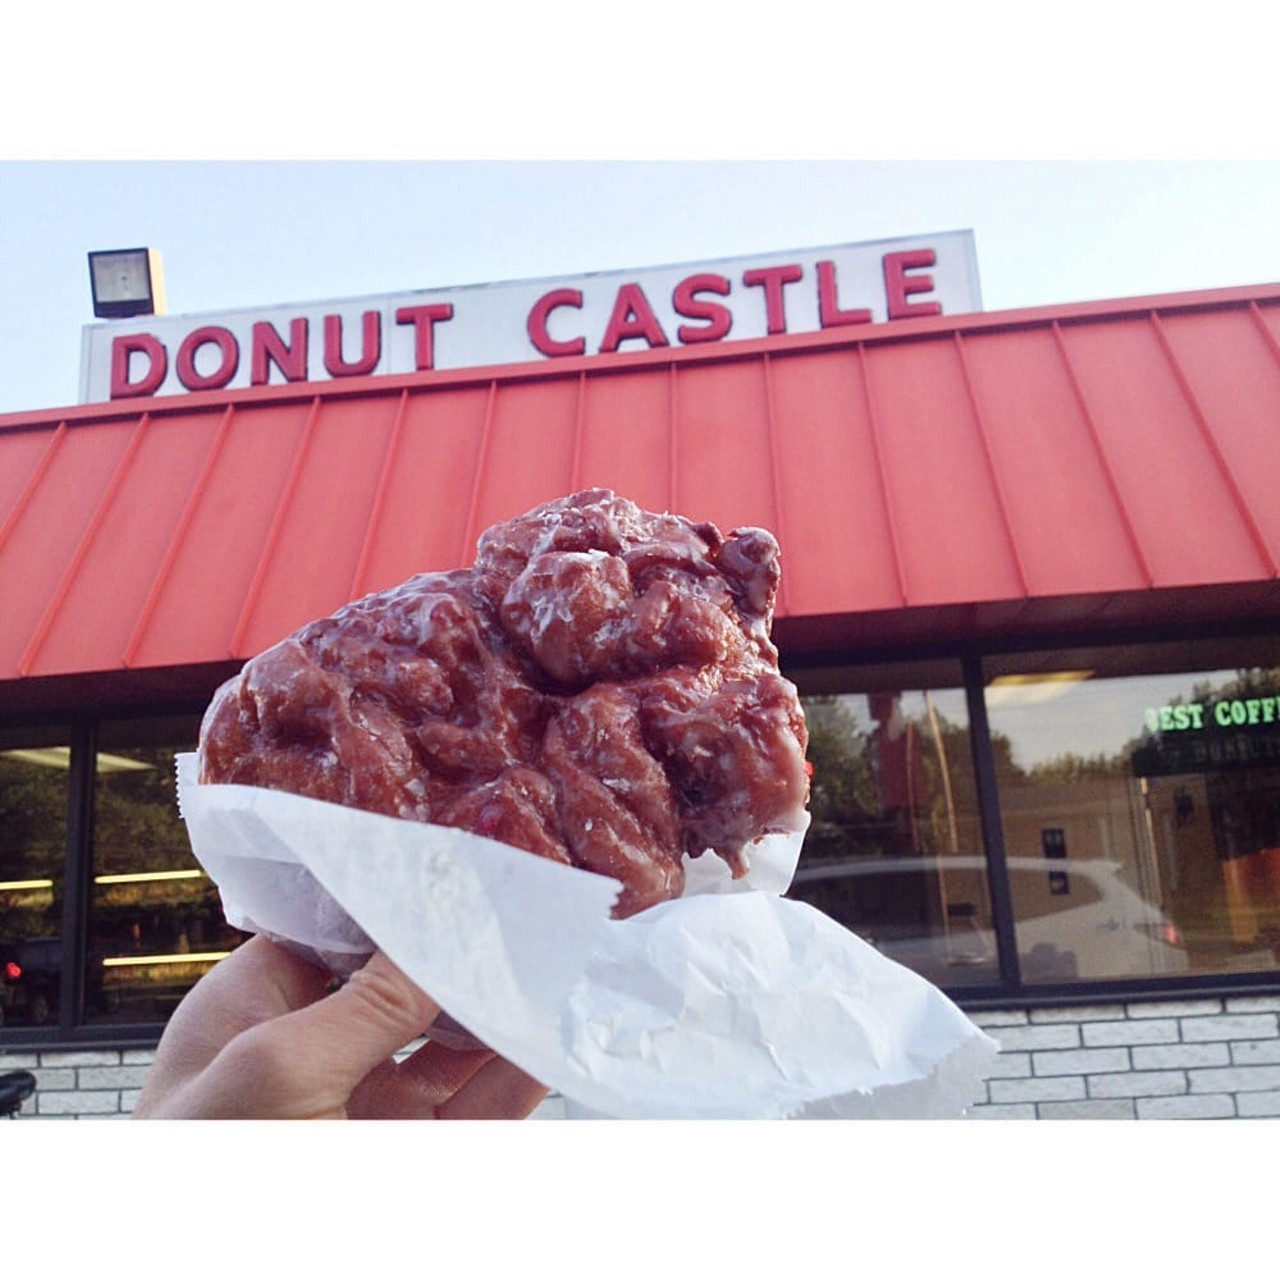  Donut Castle
Location :11831 E 13 Mile Rd, Warren
Hours: Mon-Fri 4am-3pm, Sat 5am - 2pm, Sun 7am-12pm